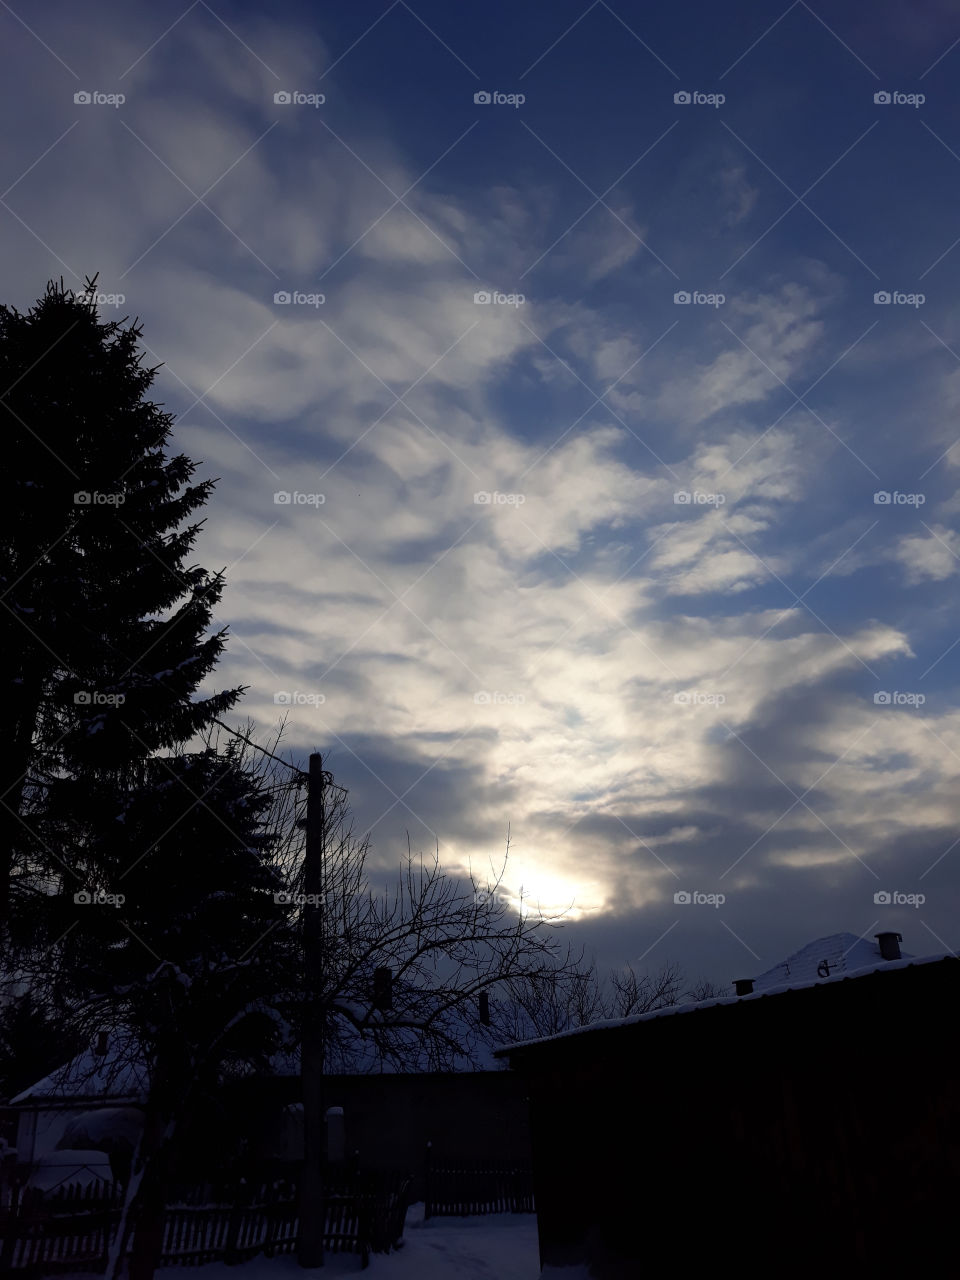 Cloud and sun, winter sky